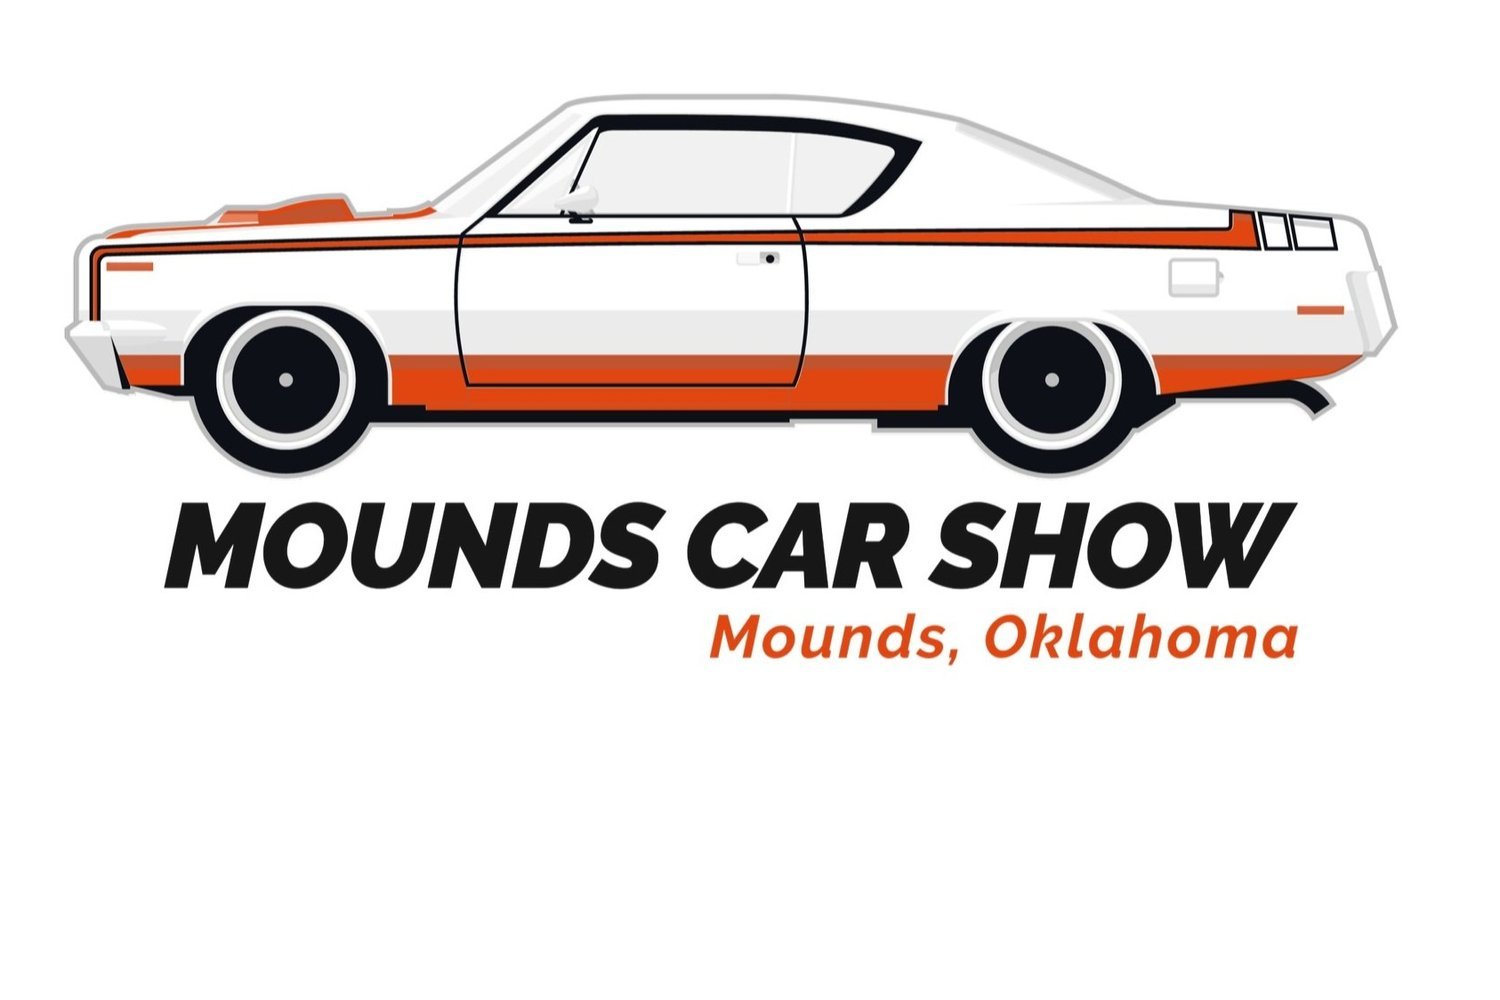 Mounds Car Show